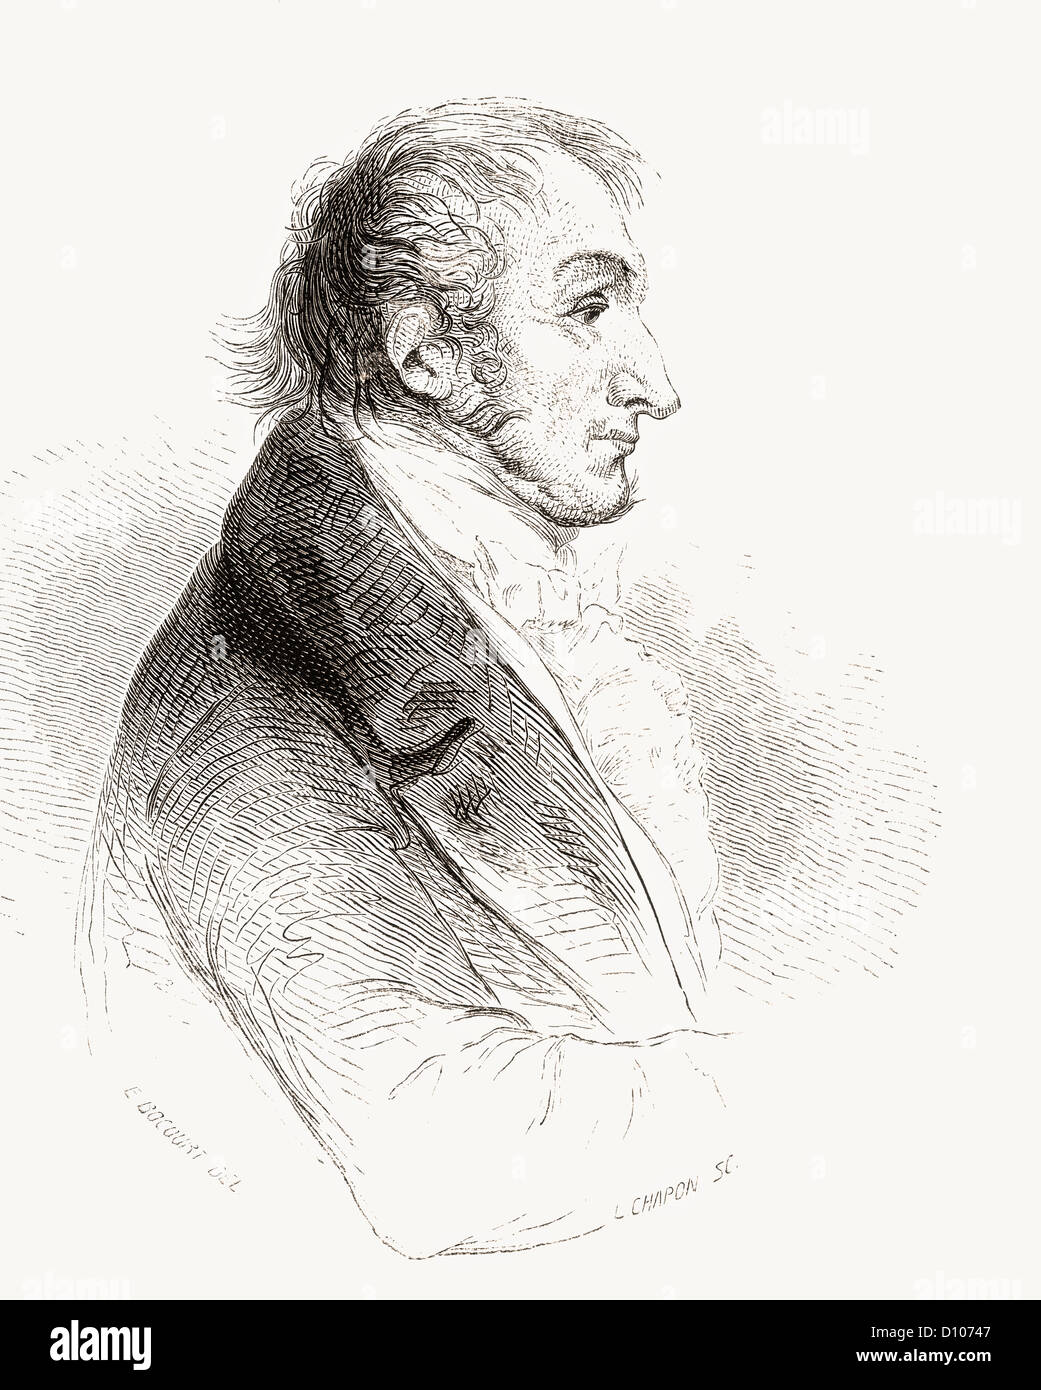 Joseph Mallord William Turner, 1775 –1851. English Romantic landscape artist, water-colourist and printmaker. Stock Photo